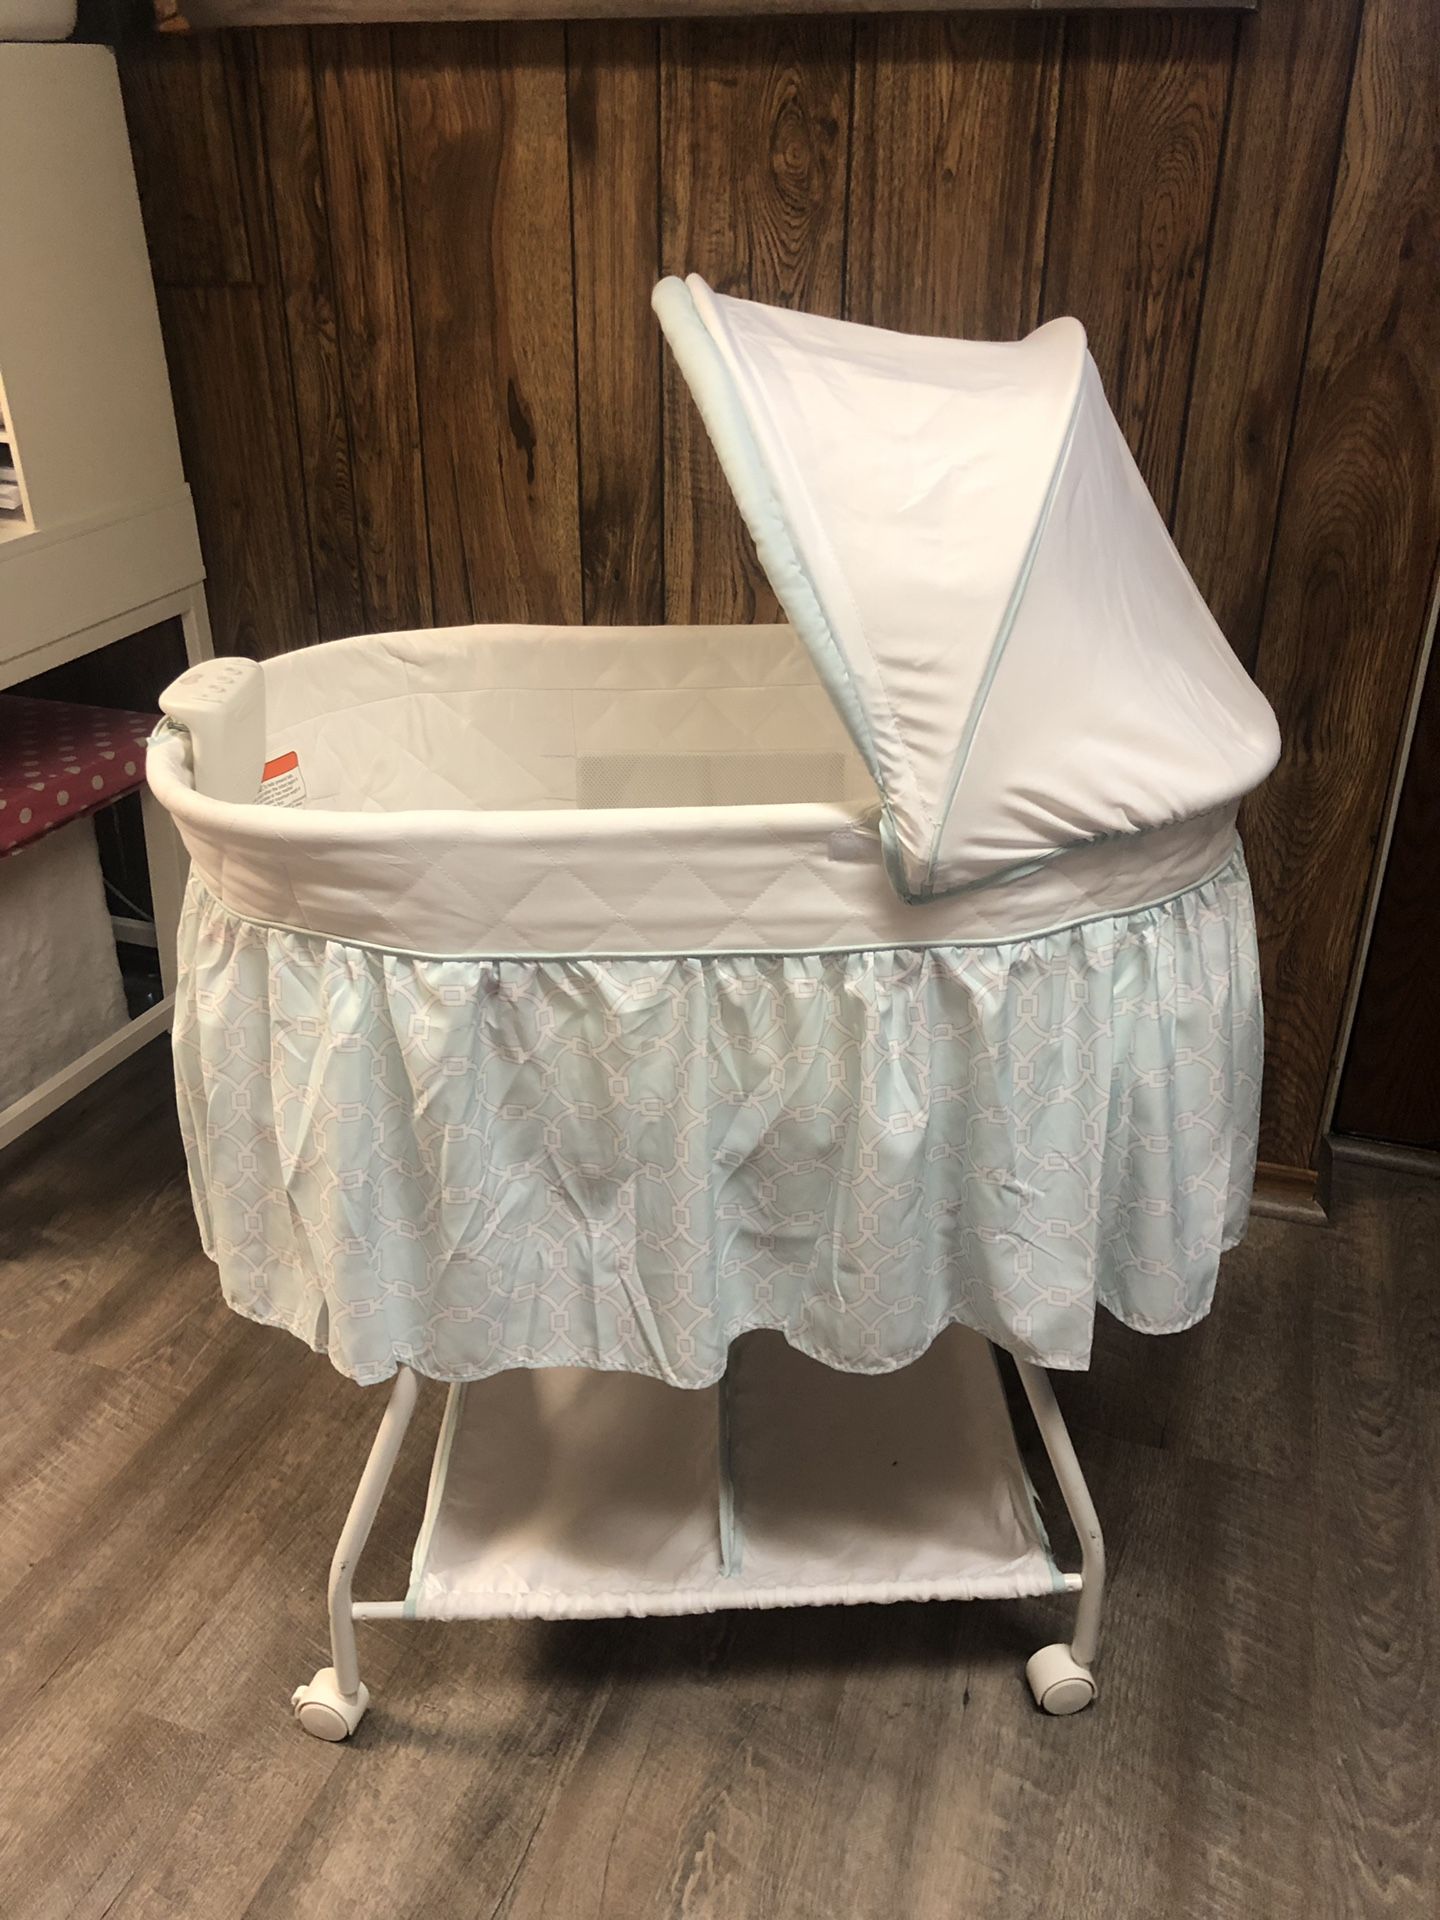 Delta baby bassinet